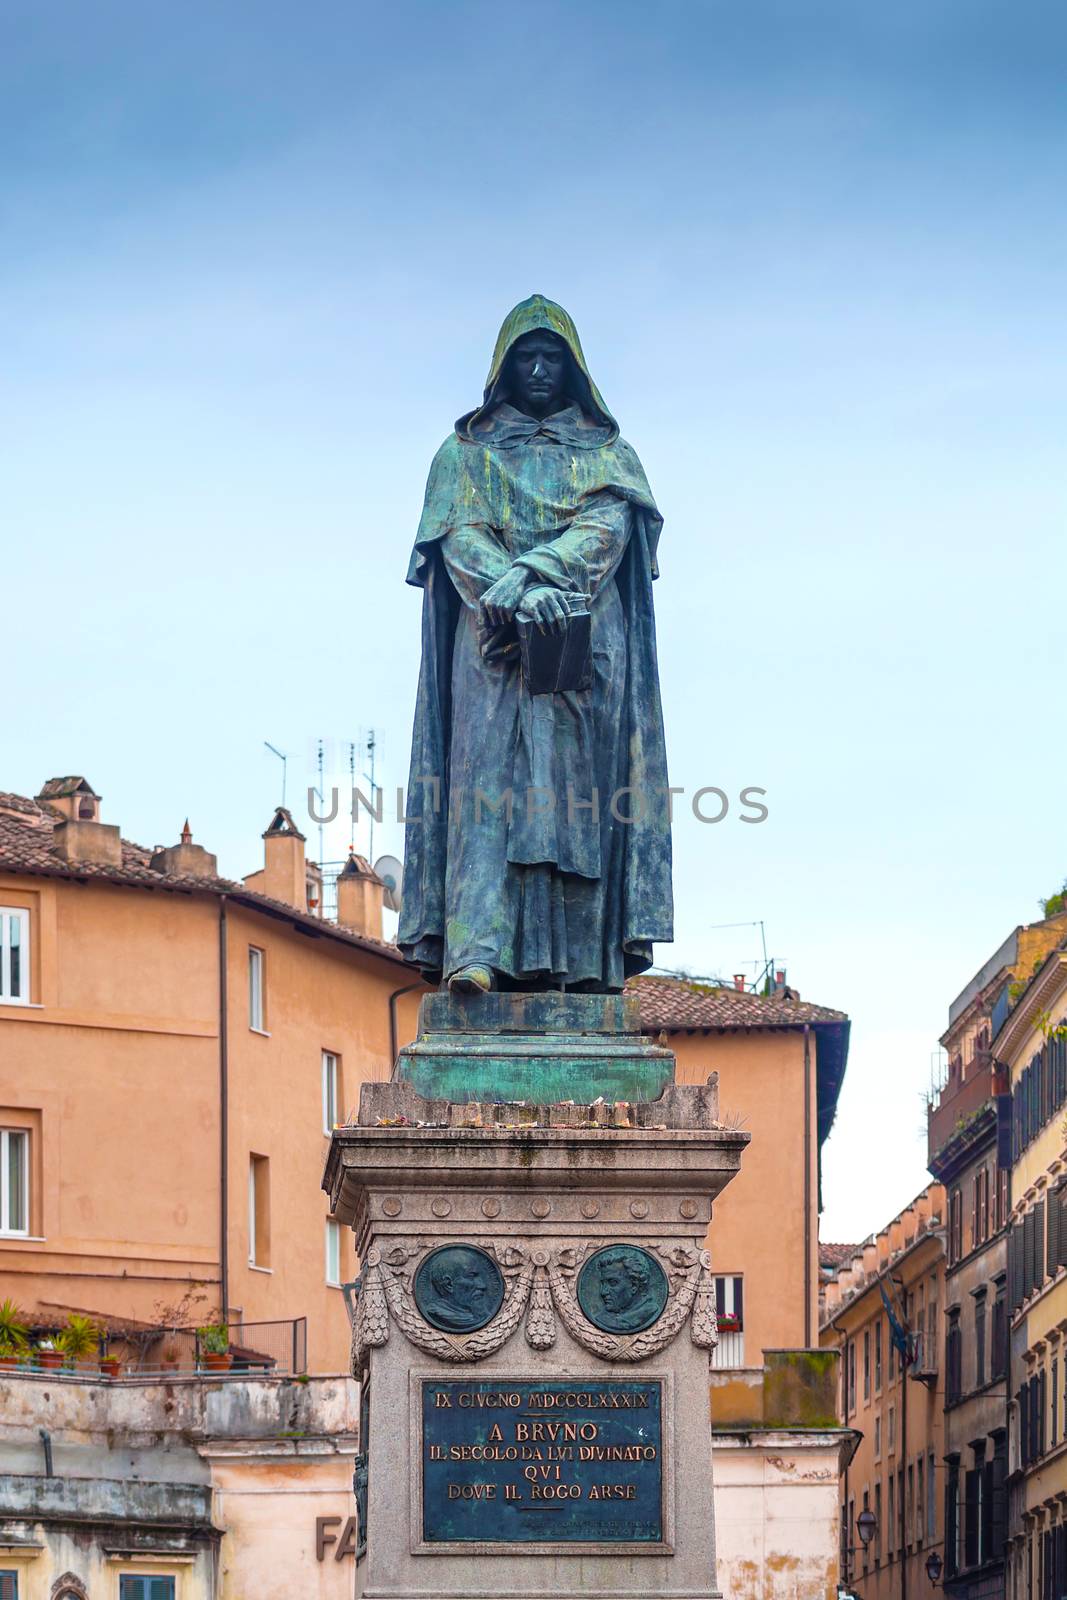 Giordano Bruno Statue in Rome by rarrarorro